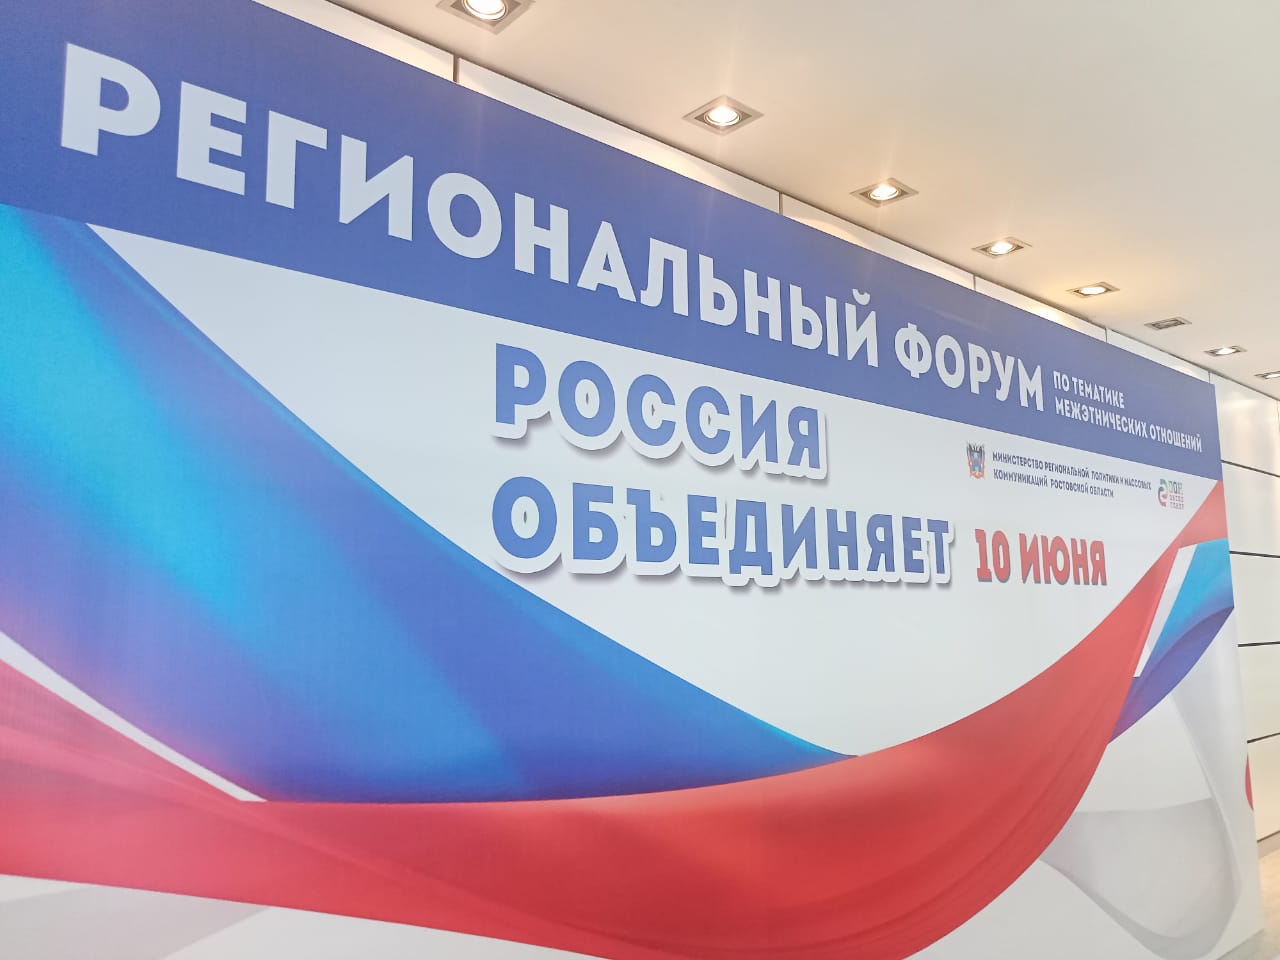 Подробнее о статье Форум по тематике межэтнических отношений «Россия объединяет», ко Дню России (12 июня)